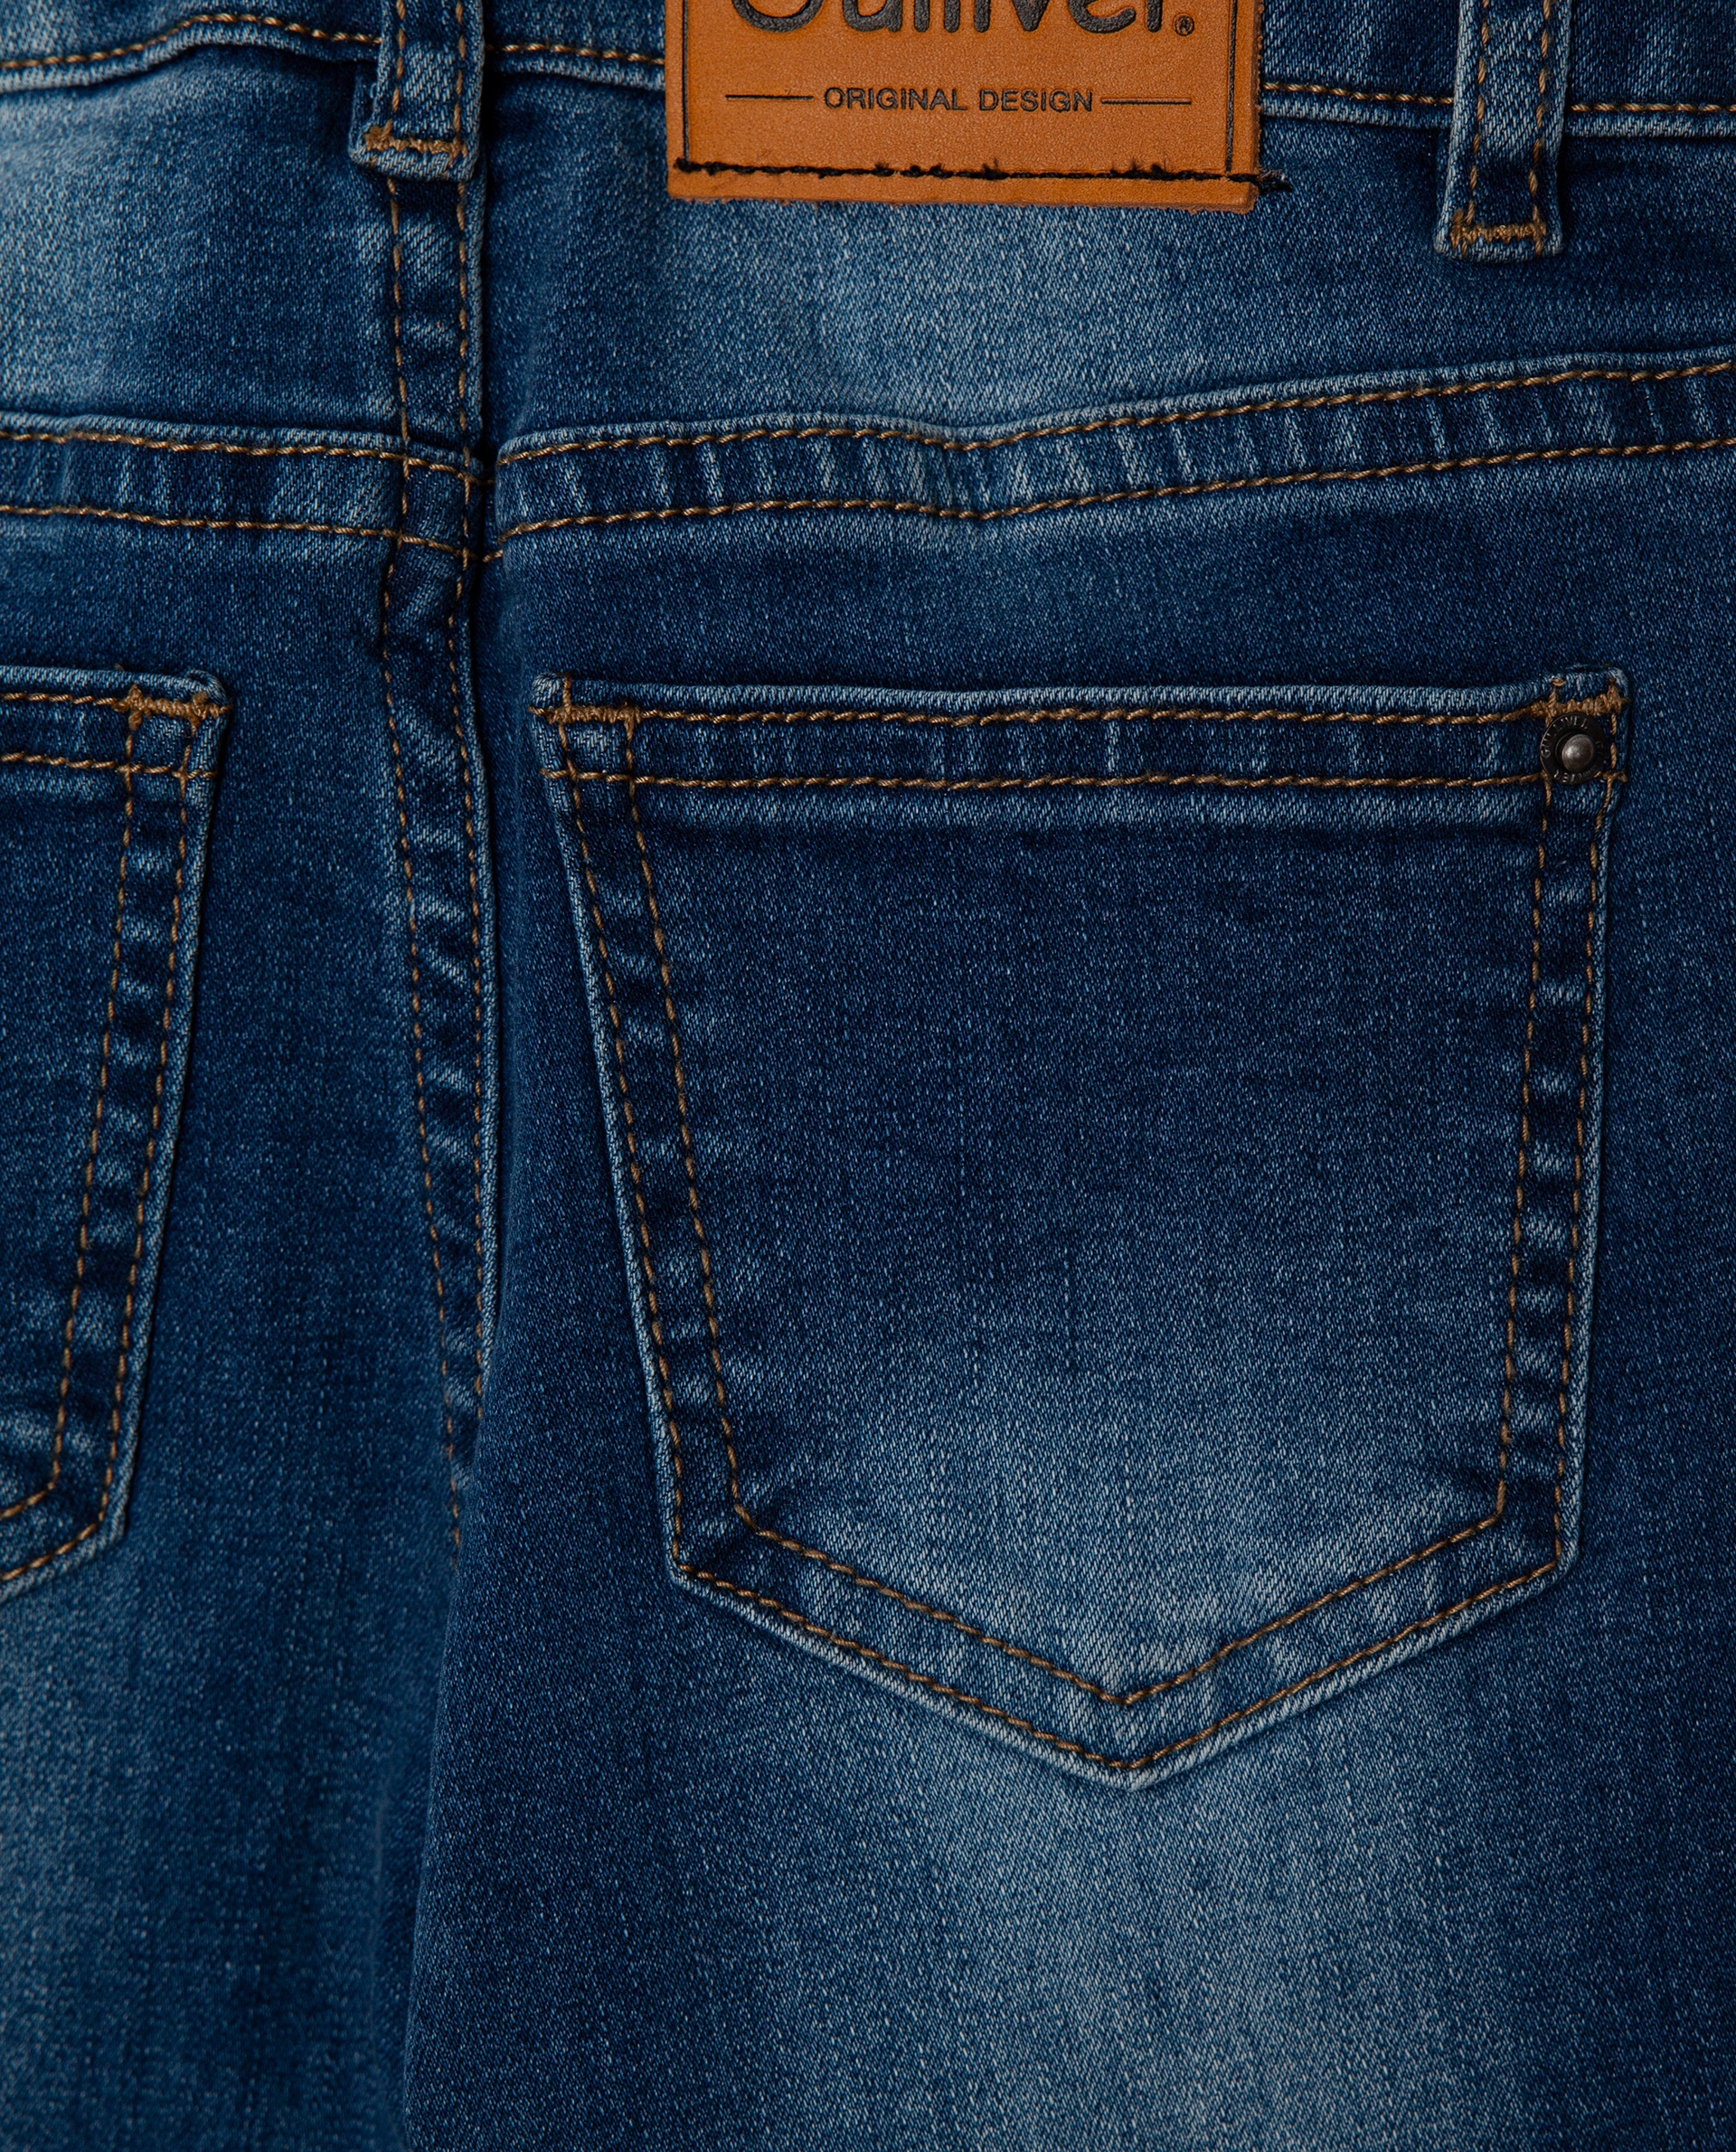 Голубые джинсы Gulliver 22002GMC6302, размер 98, цвет голубой slim / узкие - фото 5